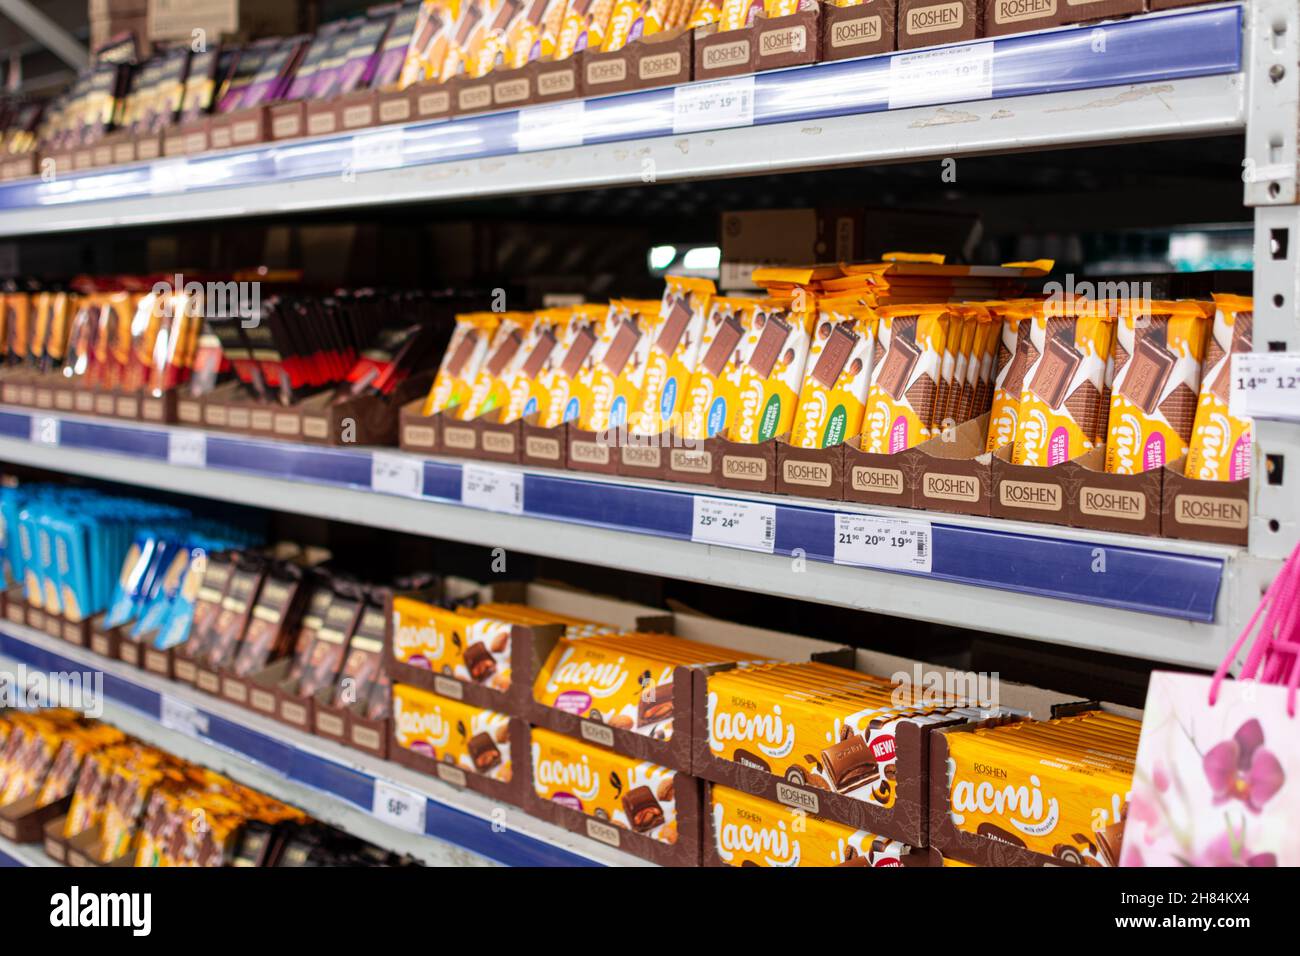 Odessa, Ucraina - 9 novembre 2021: Scaffale con tavolette di cioccolato nell'assortimento del marchio Roshen. Fuoco selettivo, profondità di campo poco profonda. Foto Stock